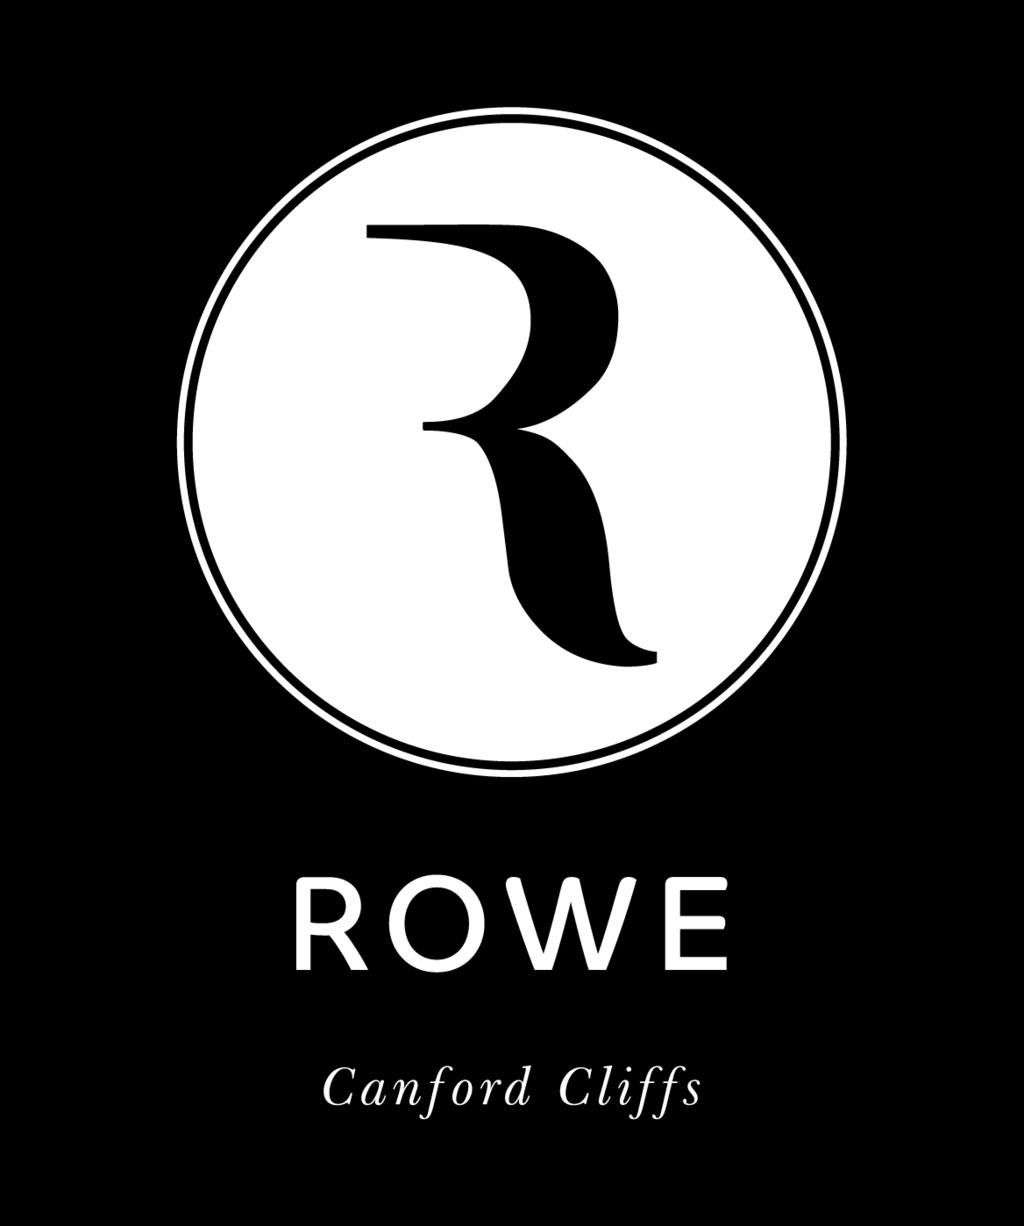 Rowe', Bodley Road In the